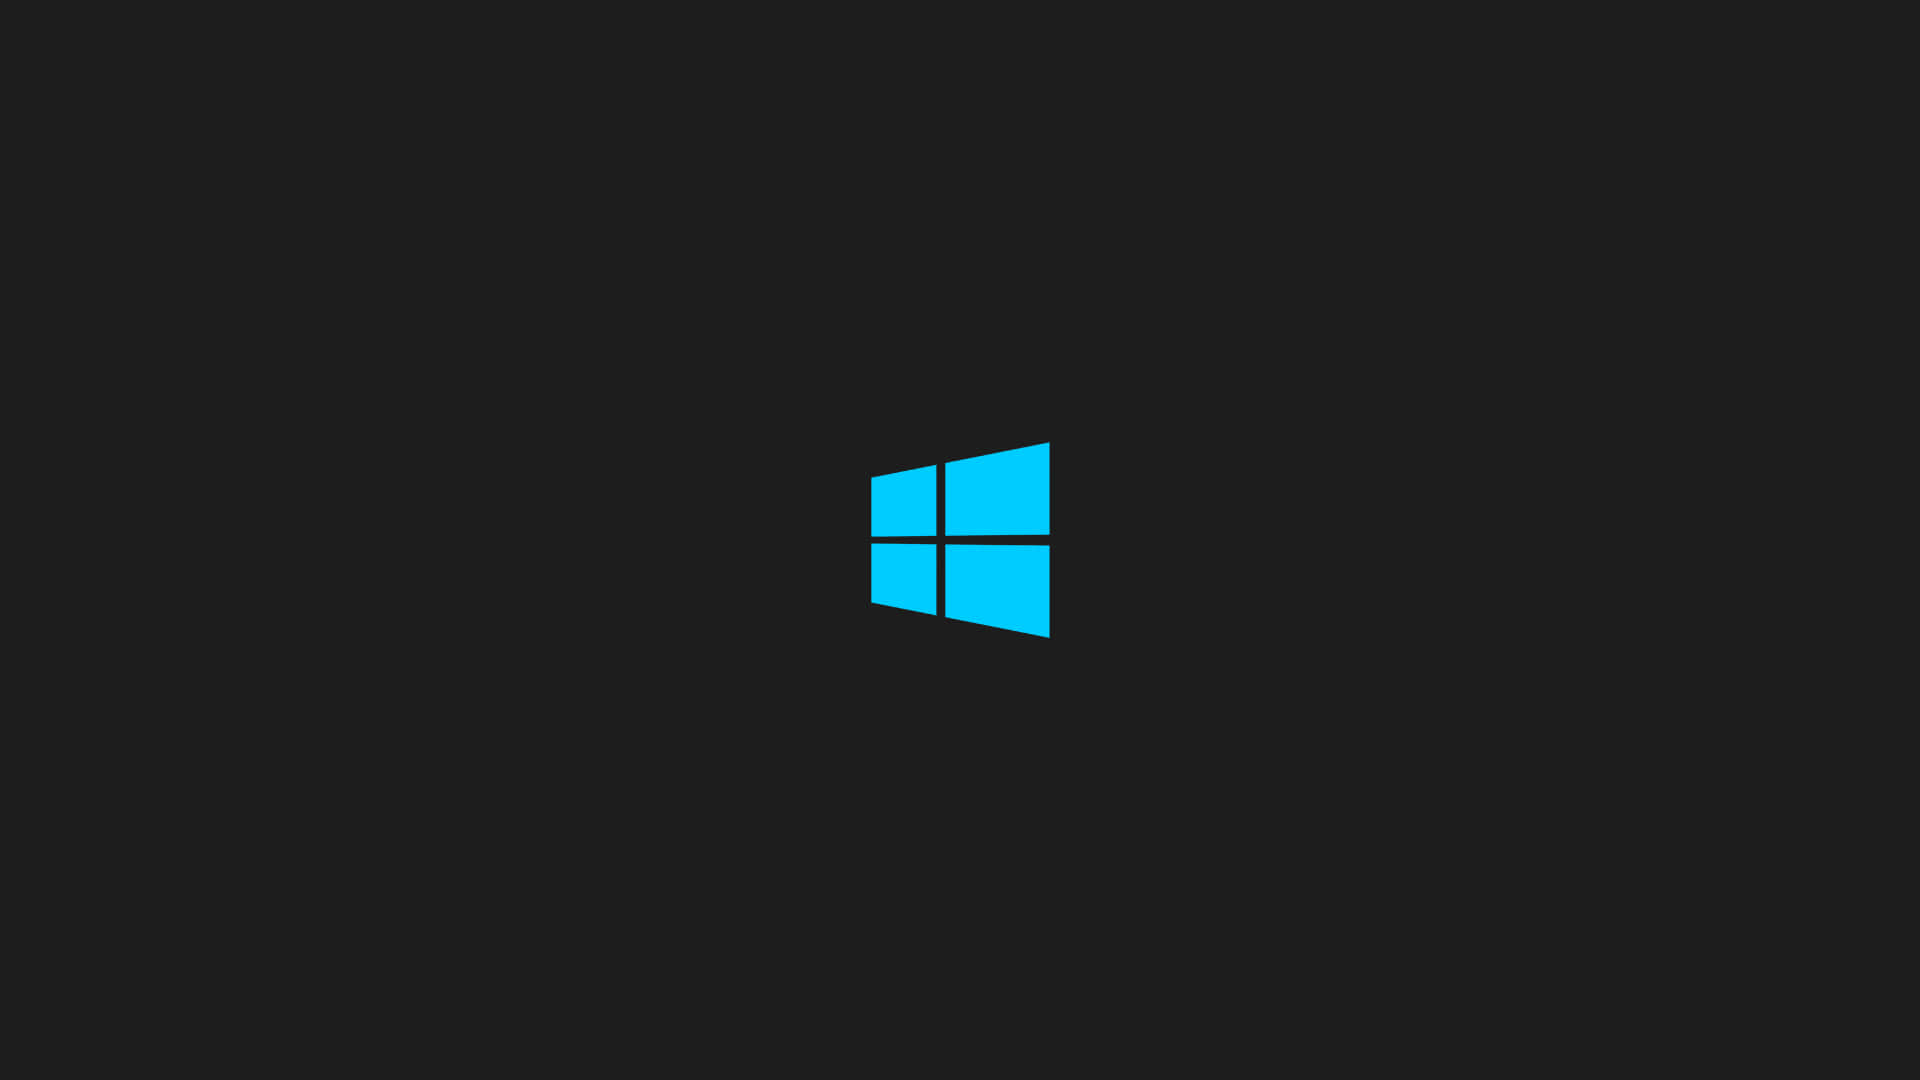 Startmenuen i Windows 1 bryder barriererne. Wallpaper